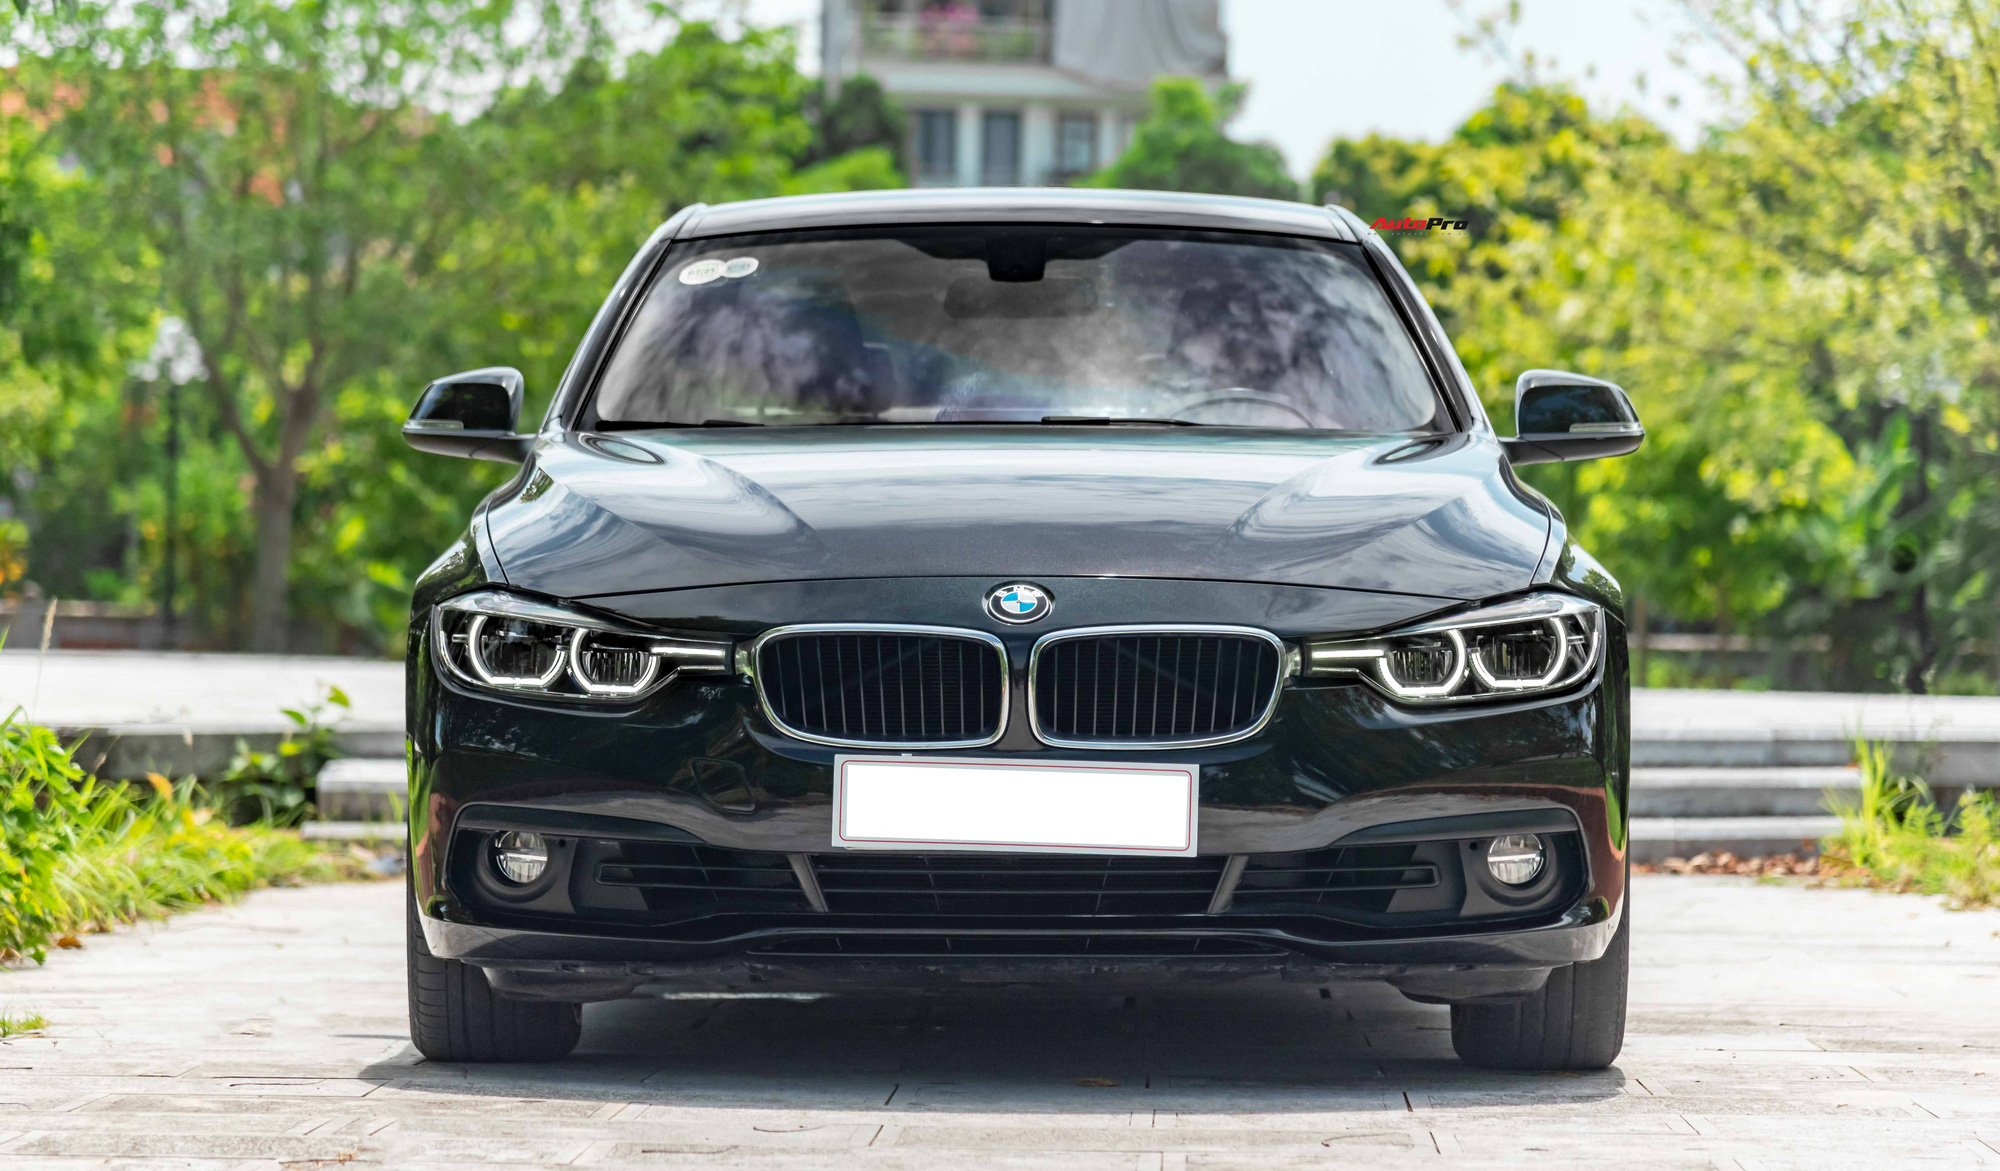 Chủ xe bán rẻ BMW 320i có nội thất 'kim cương', giá hơn 900 triệu đồng ...